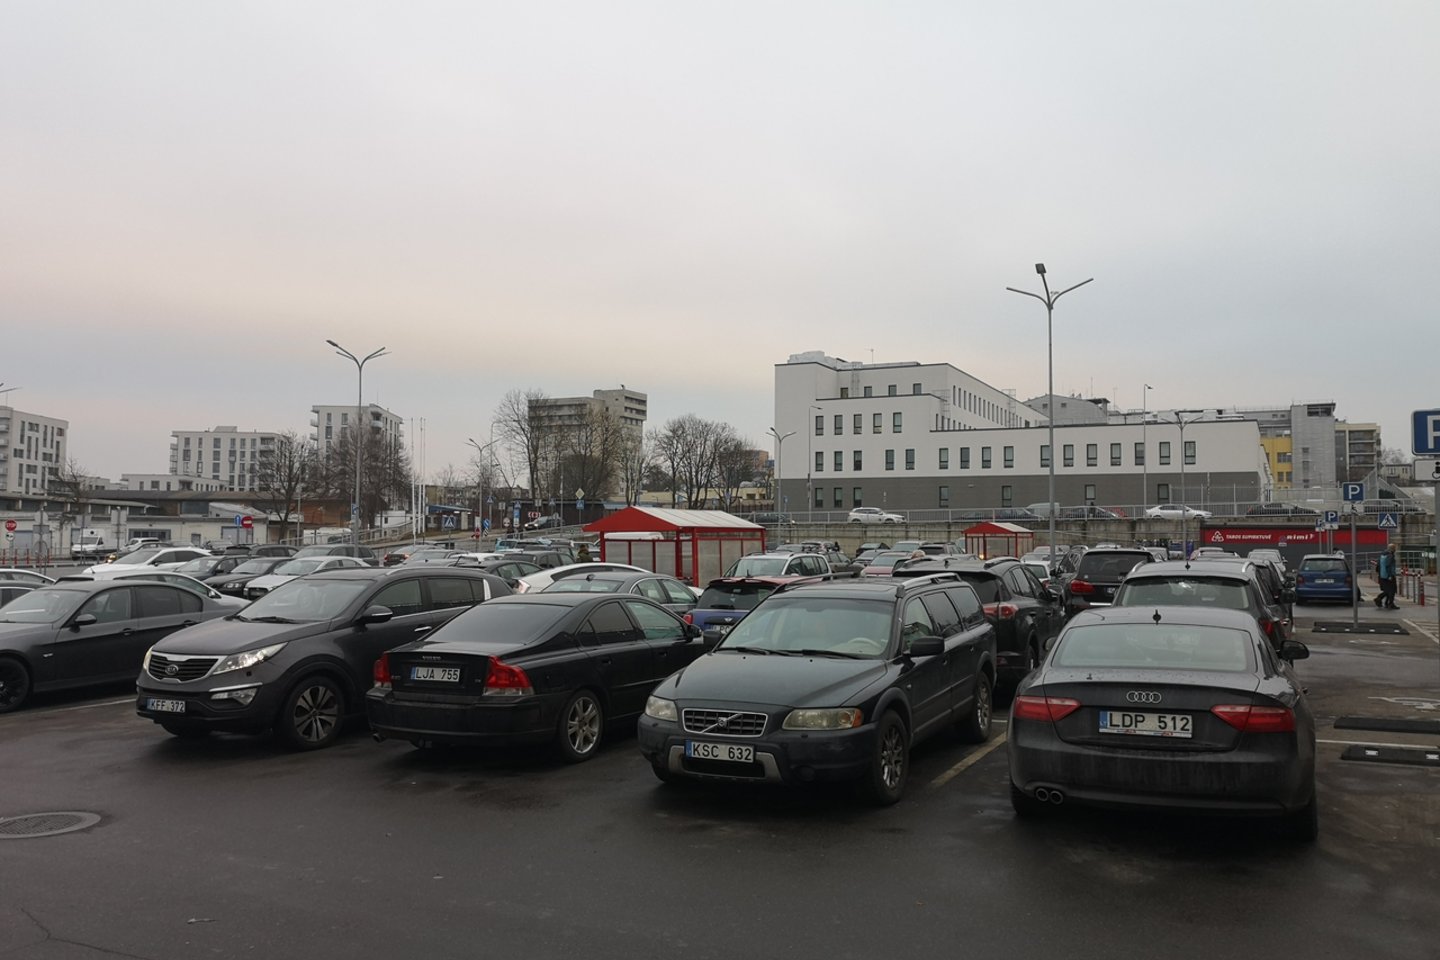  Šeštadienį  autombilių stovėjimo aikštelės prie Vilniaus prekybos centrų buvo sausakimšos. <br> Lrytas.lt skaitytojo nuotr. 